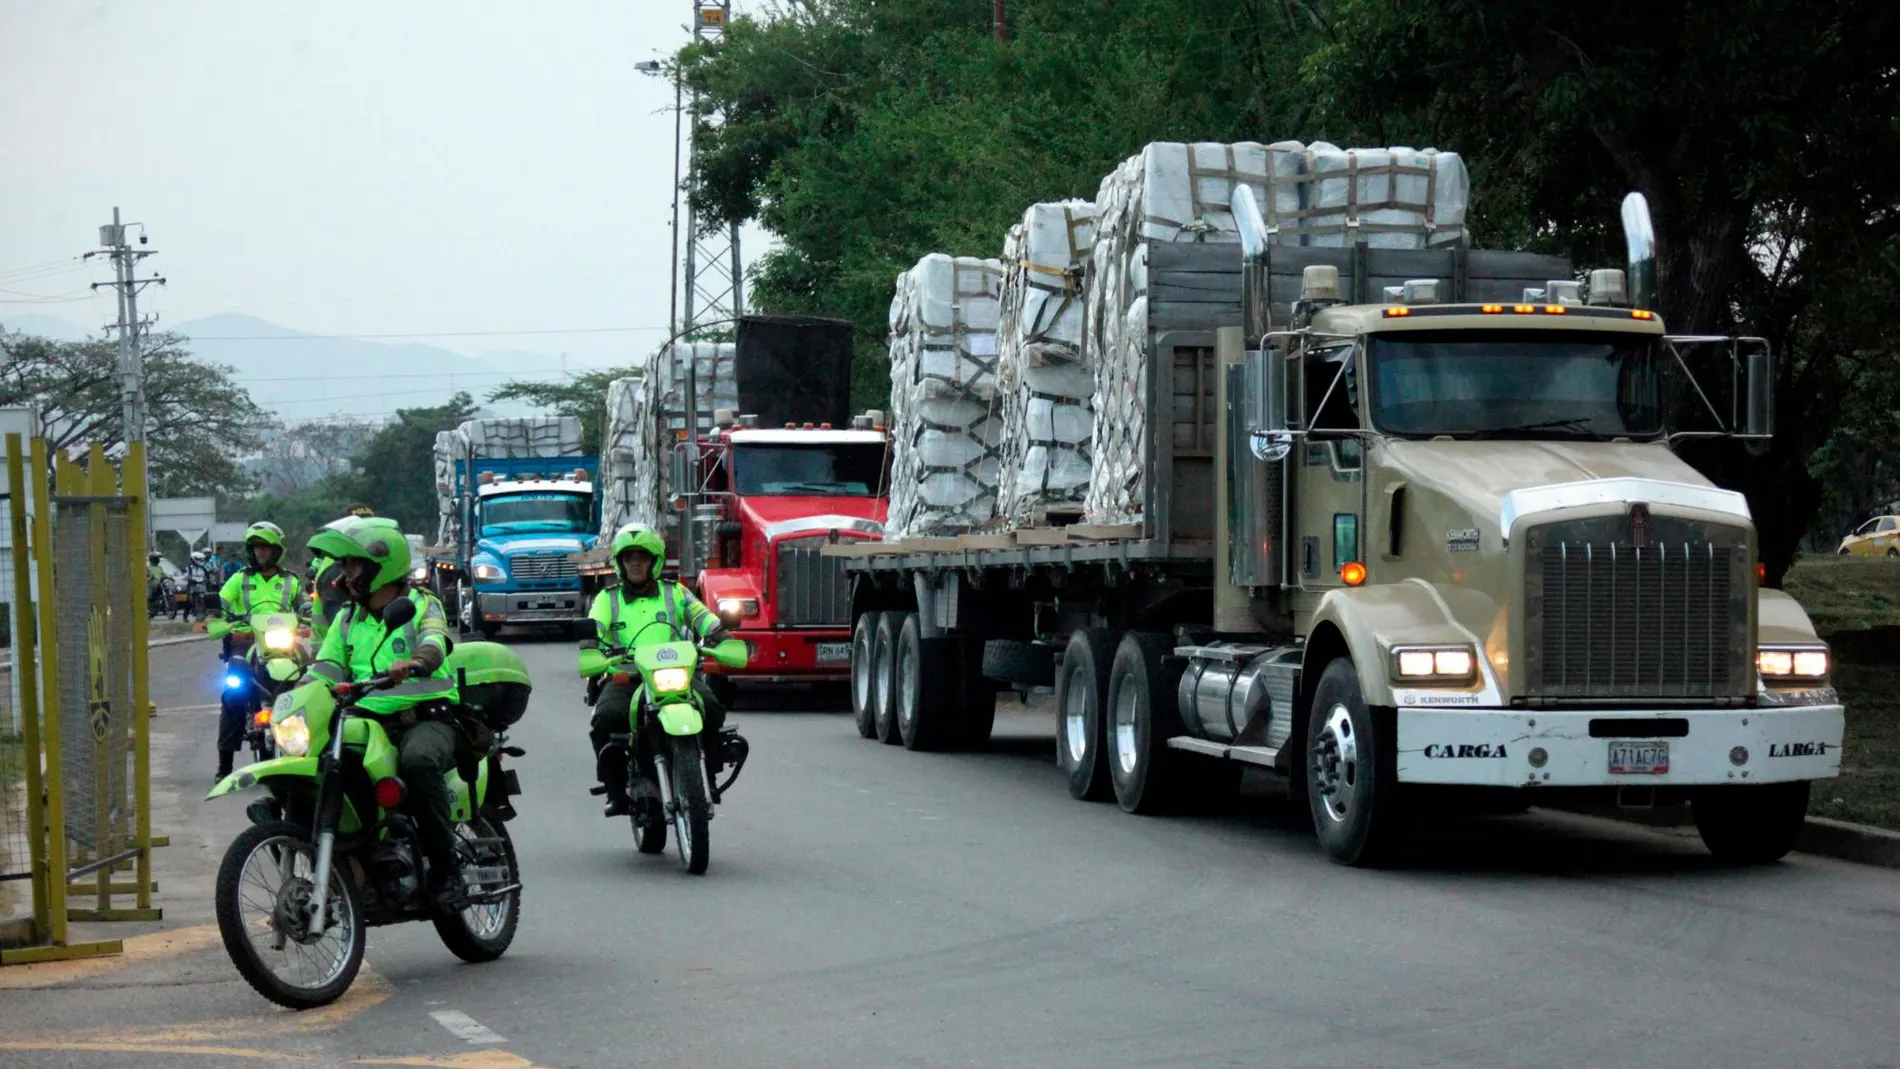 La policía escolta varios camiones con ayuda humanitaria en Colombia en direccióna la frontera venezolana/Reuters